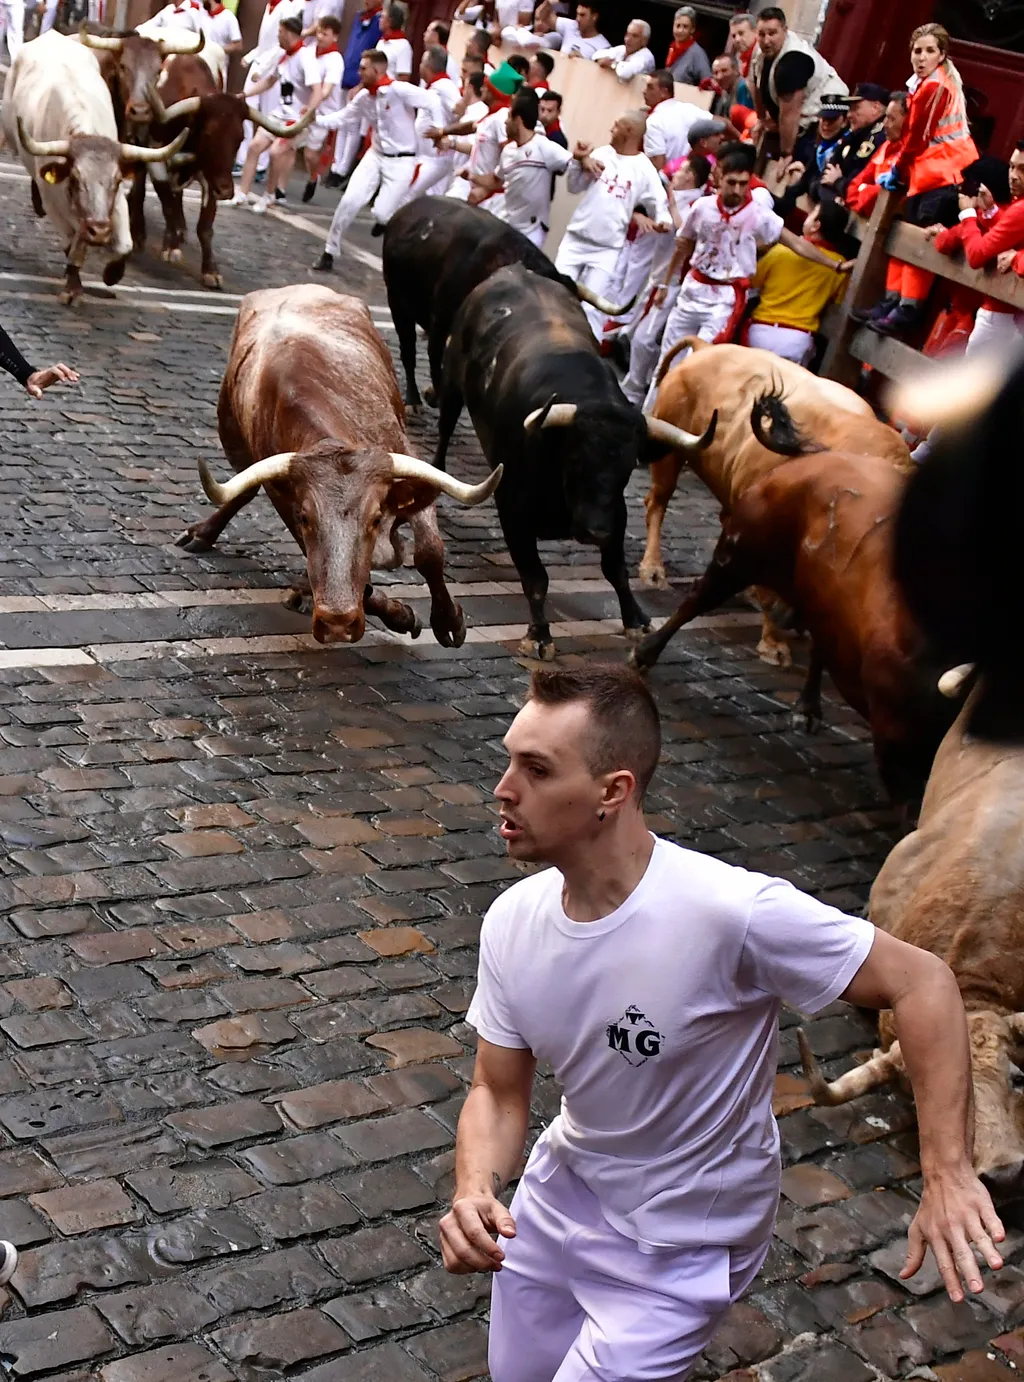 Bikafuttatás Pamlona, bika, fiesta, 
San Fermín fesztivál spanyolország, 
  spanyolországi Pamplonában 2022. július 7-én. A város védőszentjének tiszteletére 1591 óta évente megrendezett kilencnapos fiesta egyik fő at 